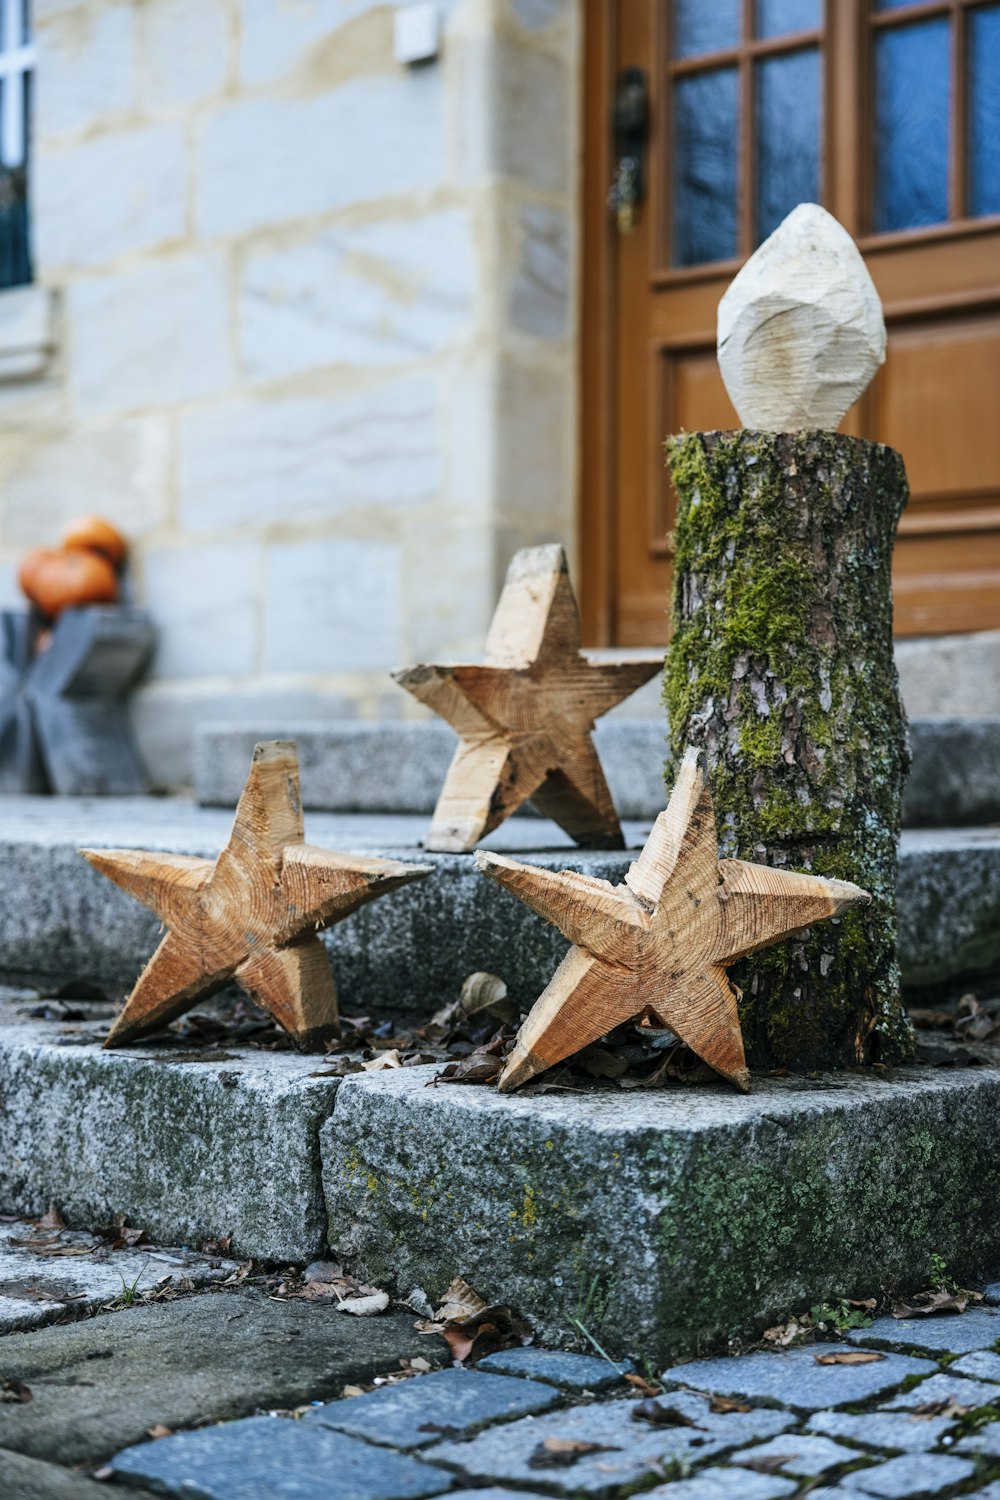 Tre stelle di legno sono poste accanto a un ceppo d'albero